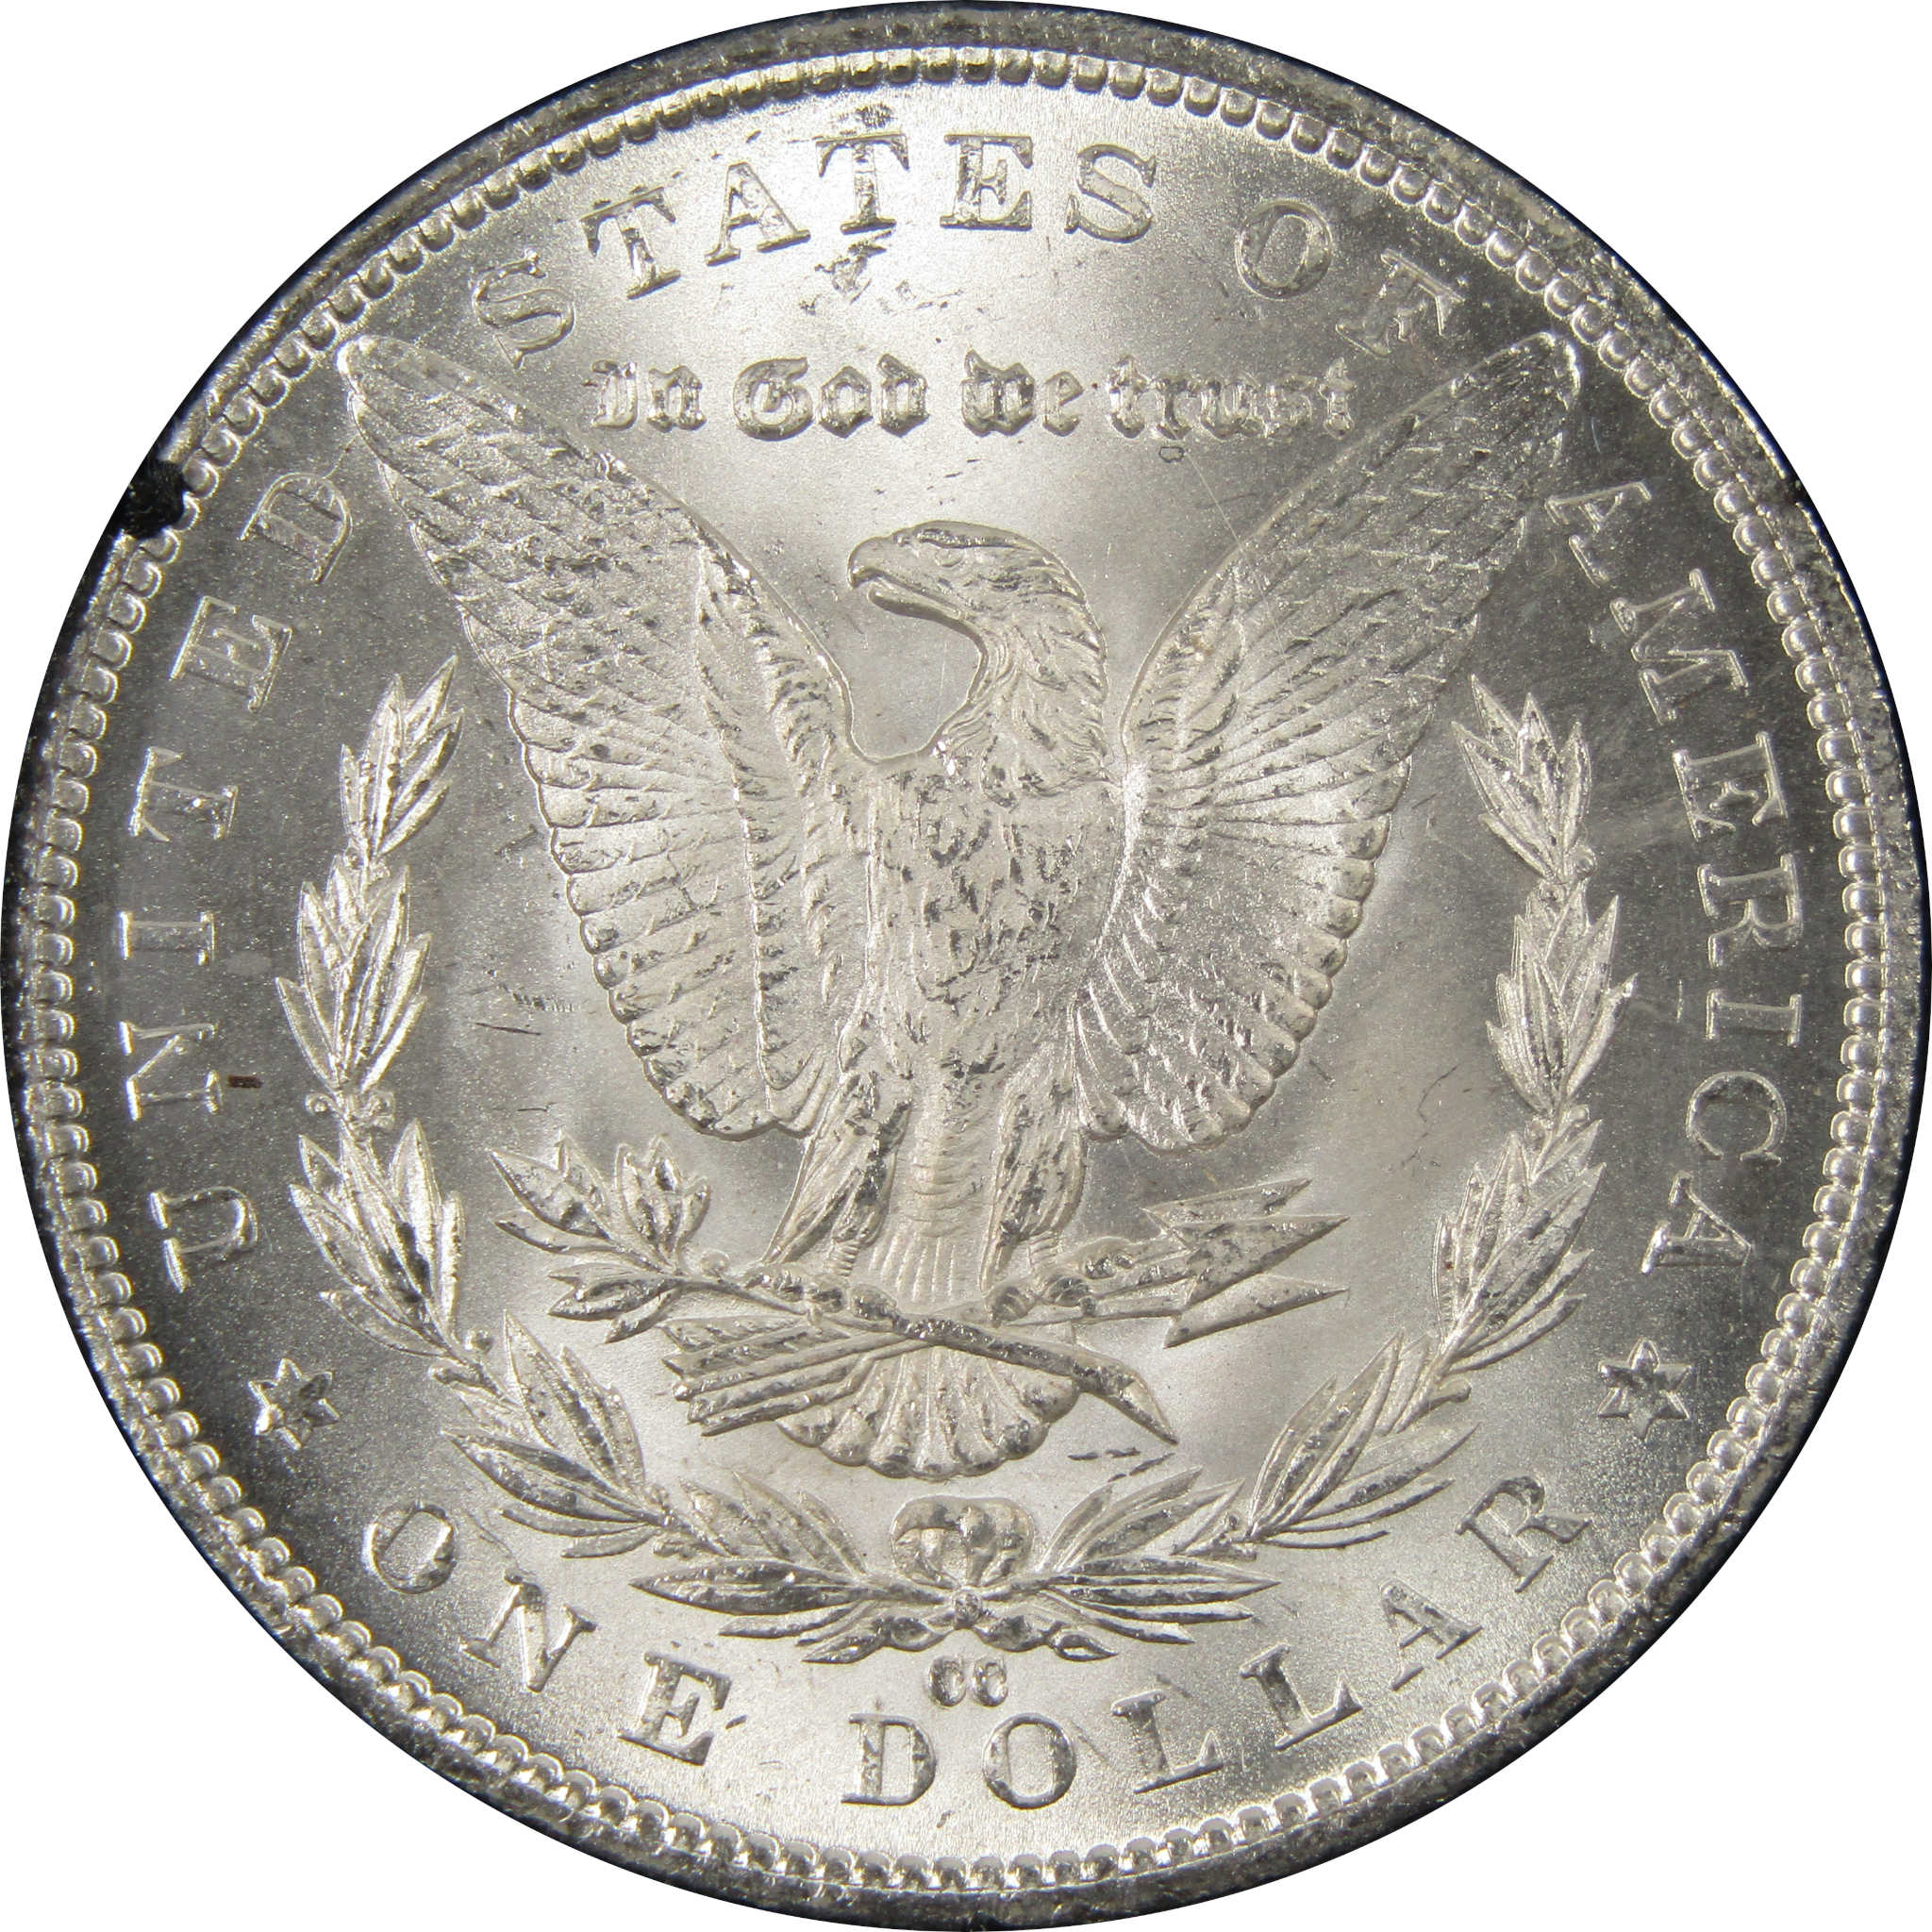 1884 CC GSA Morgan Dollar BU Uncirculated Silver $1 Coin SKU:I9860 - Morgan coin - Morgan silver dollar - Morgan silver dollar for sale - Profile Coins &amp; Collectibles